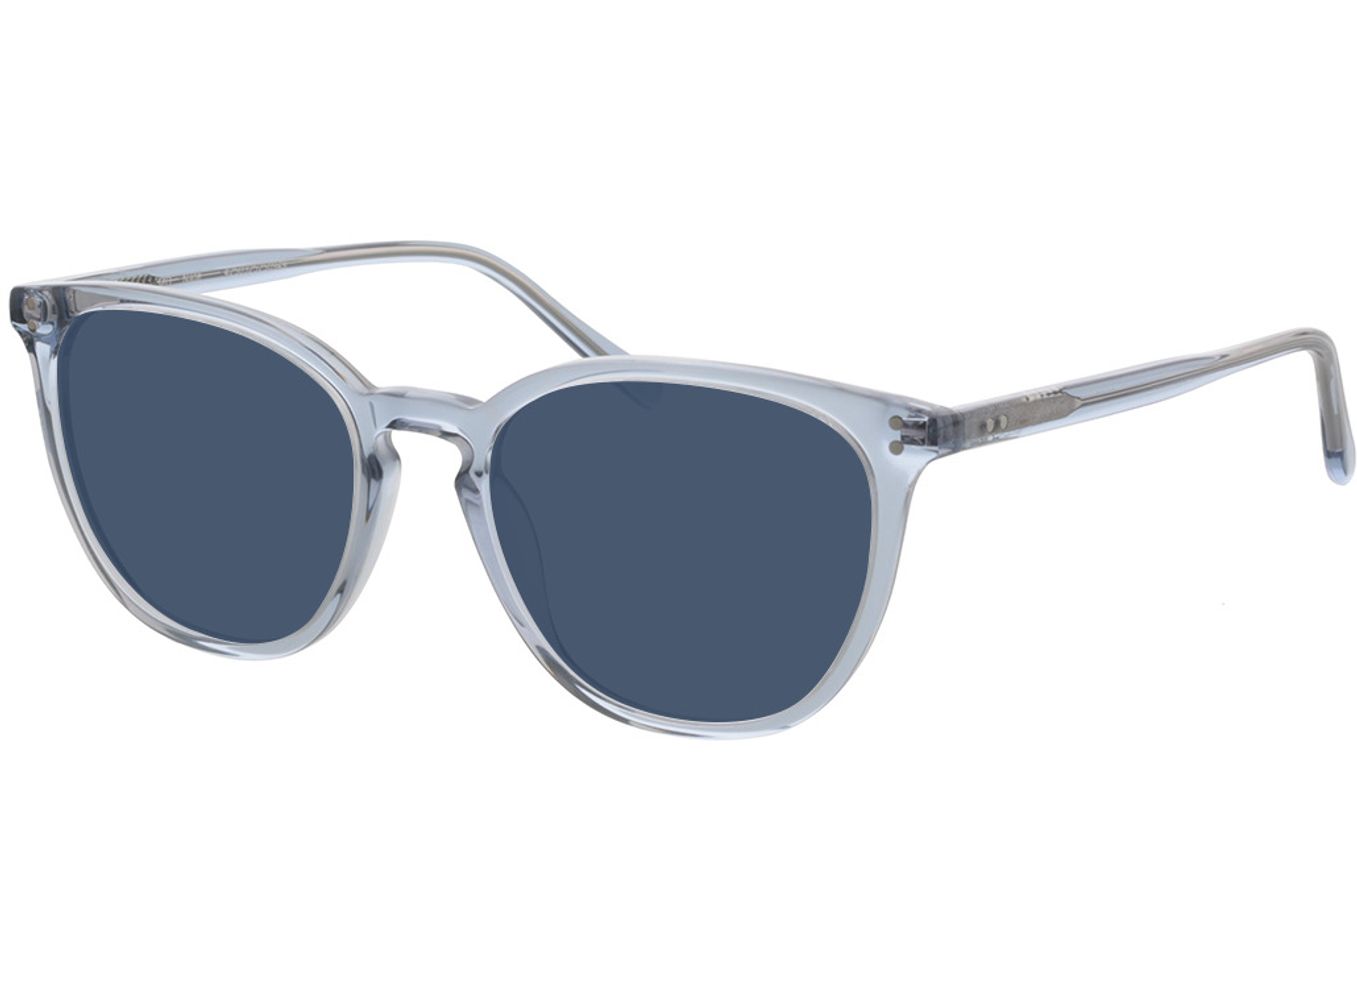 Nate - blau-transparent Sonnenbrille ohne Sehstärke, Vollrand, Rund von Brille24 Collection